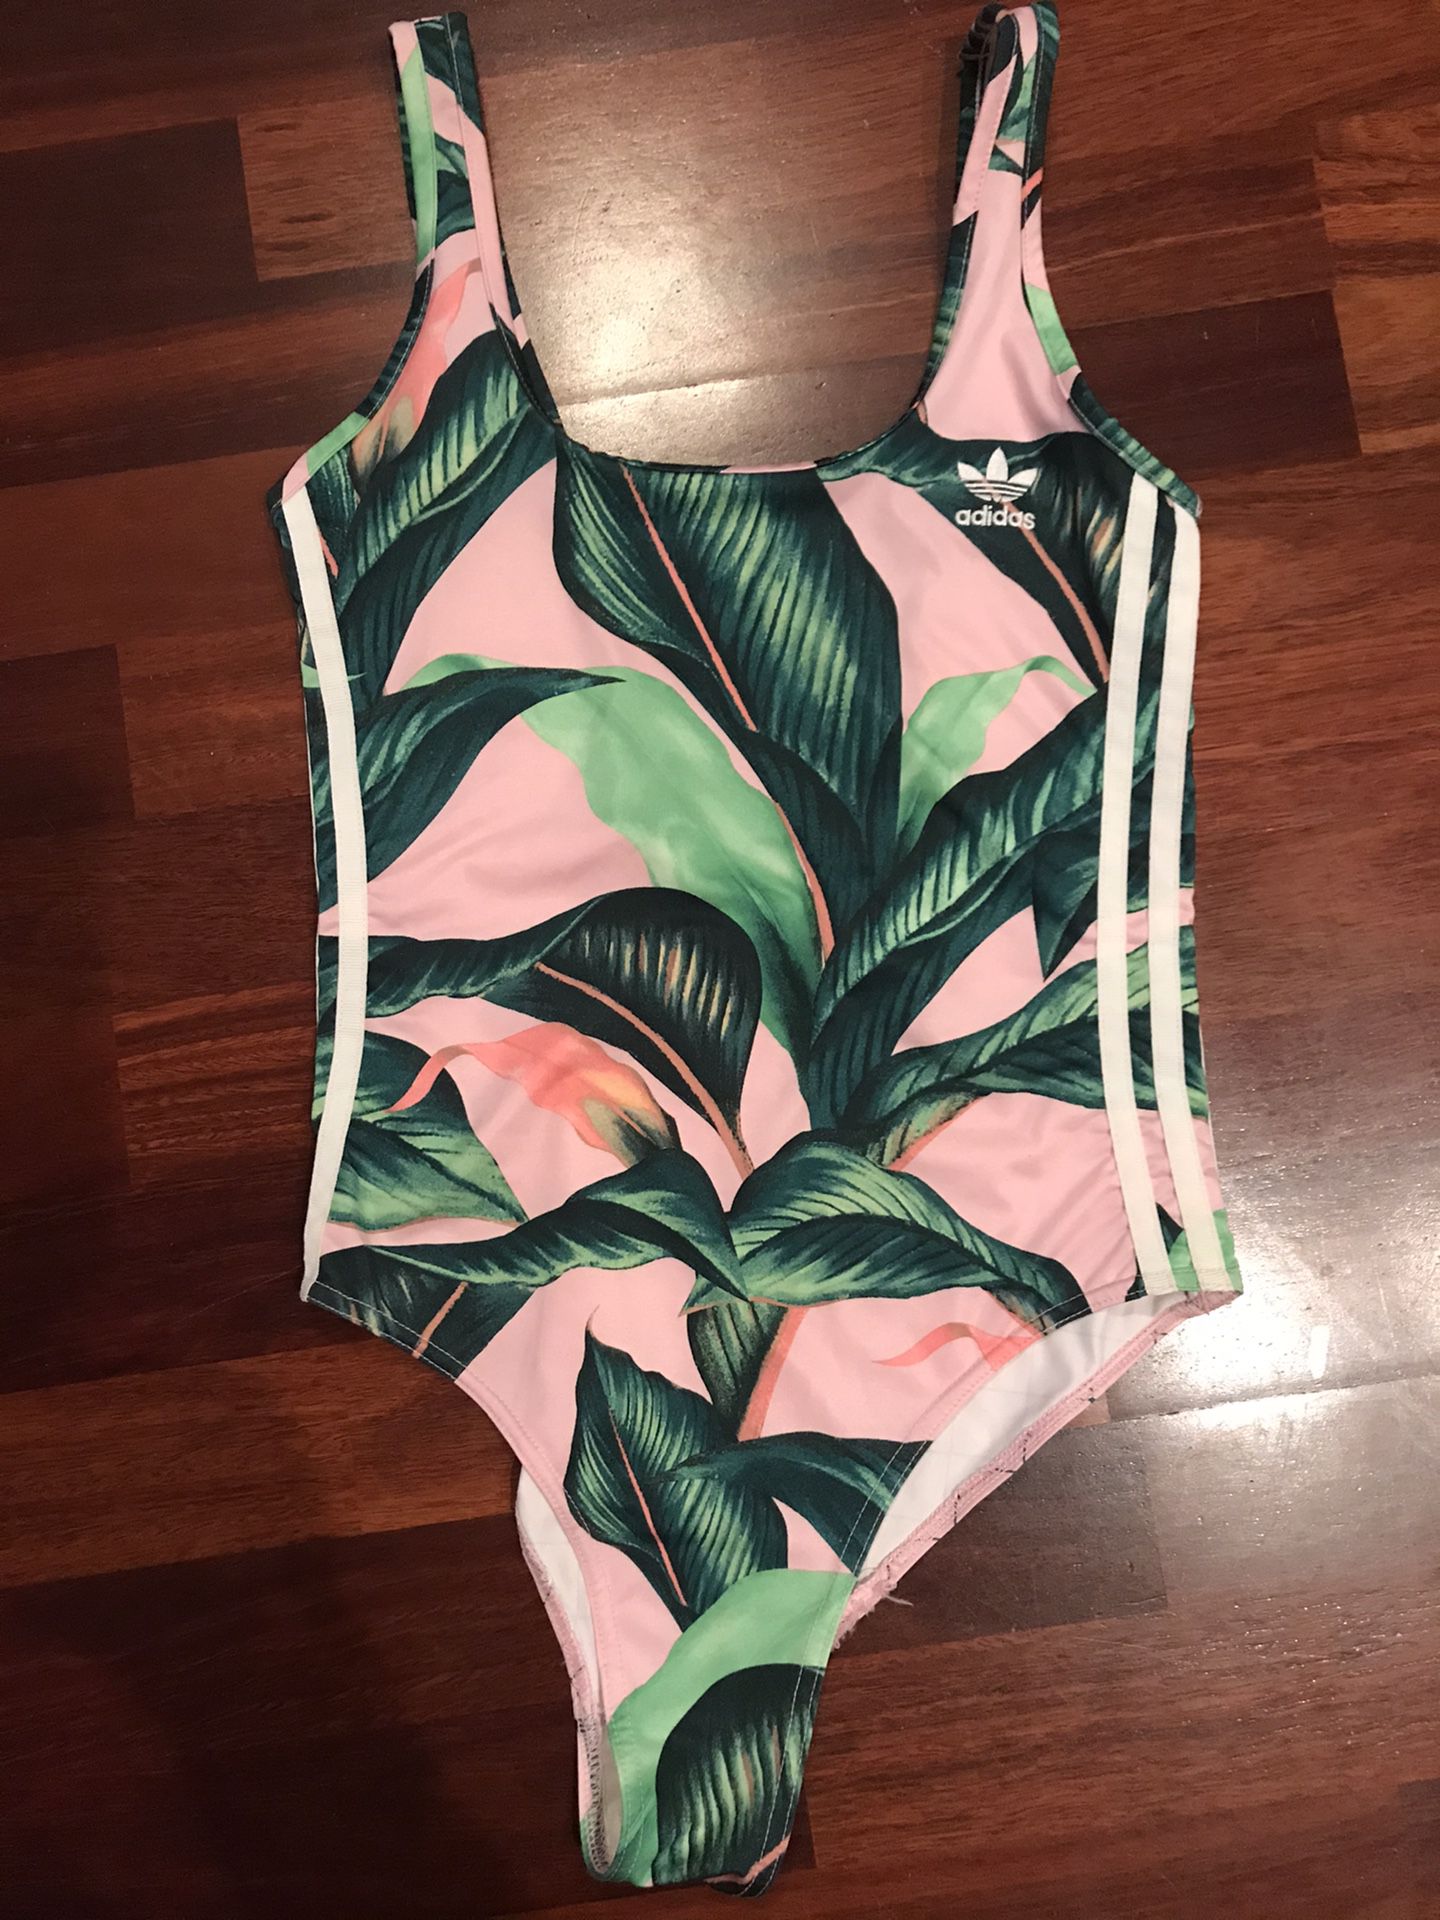 Adidas bathing suit swimsuit